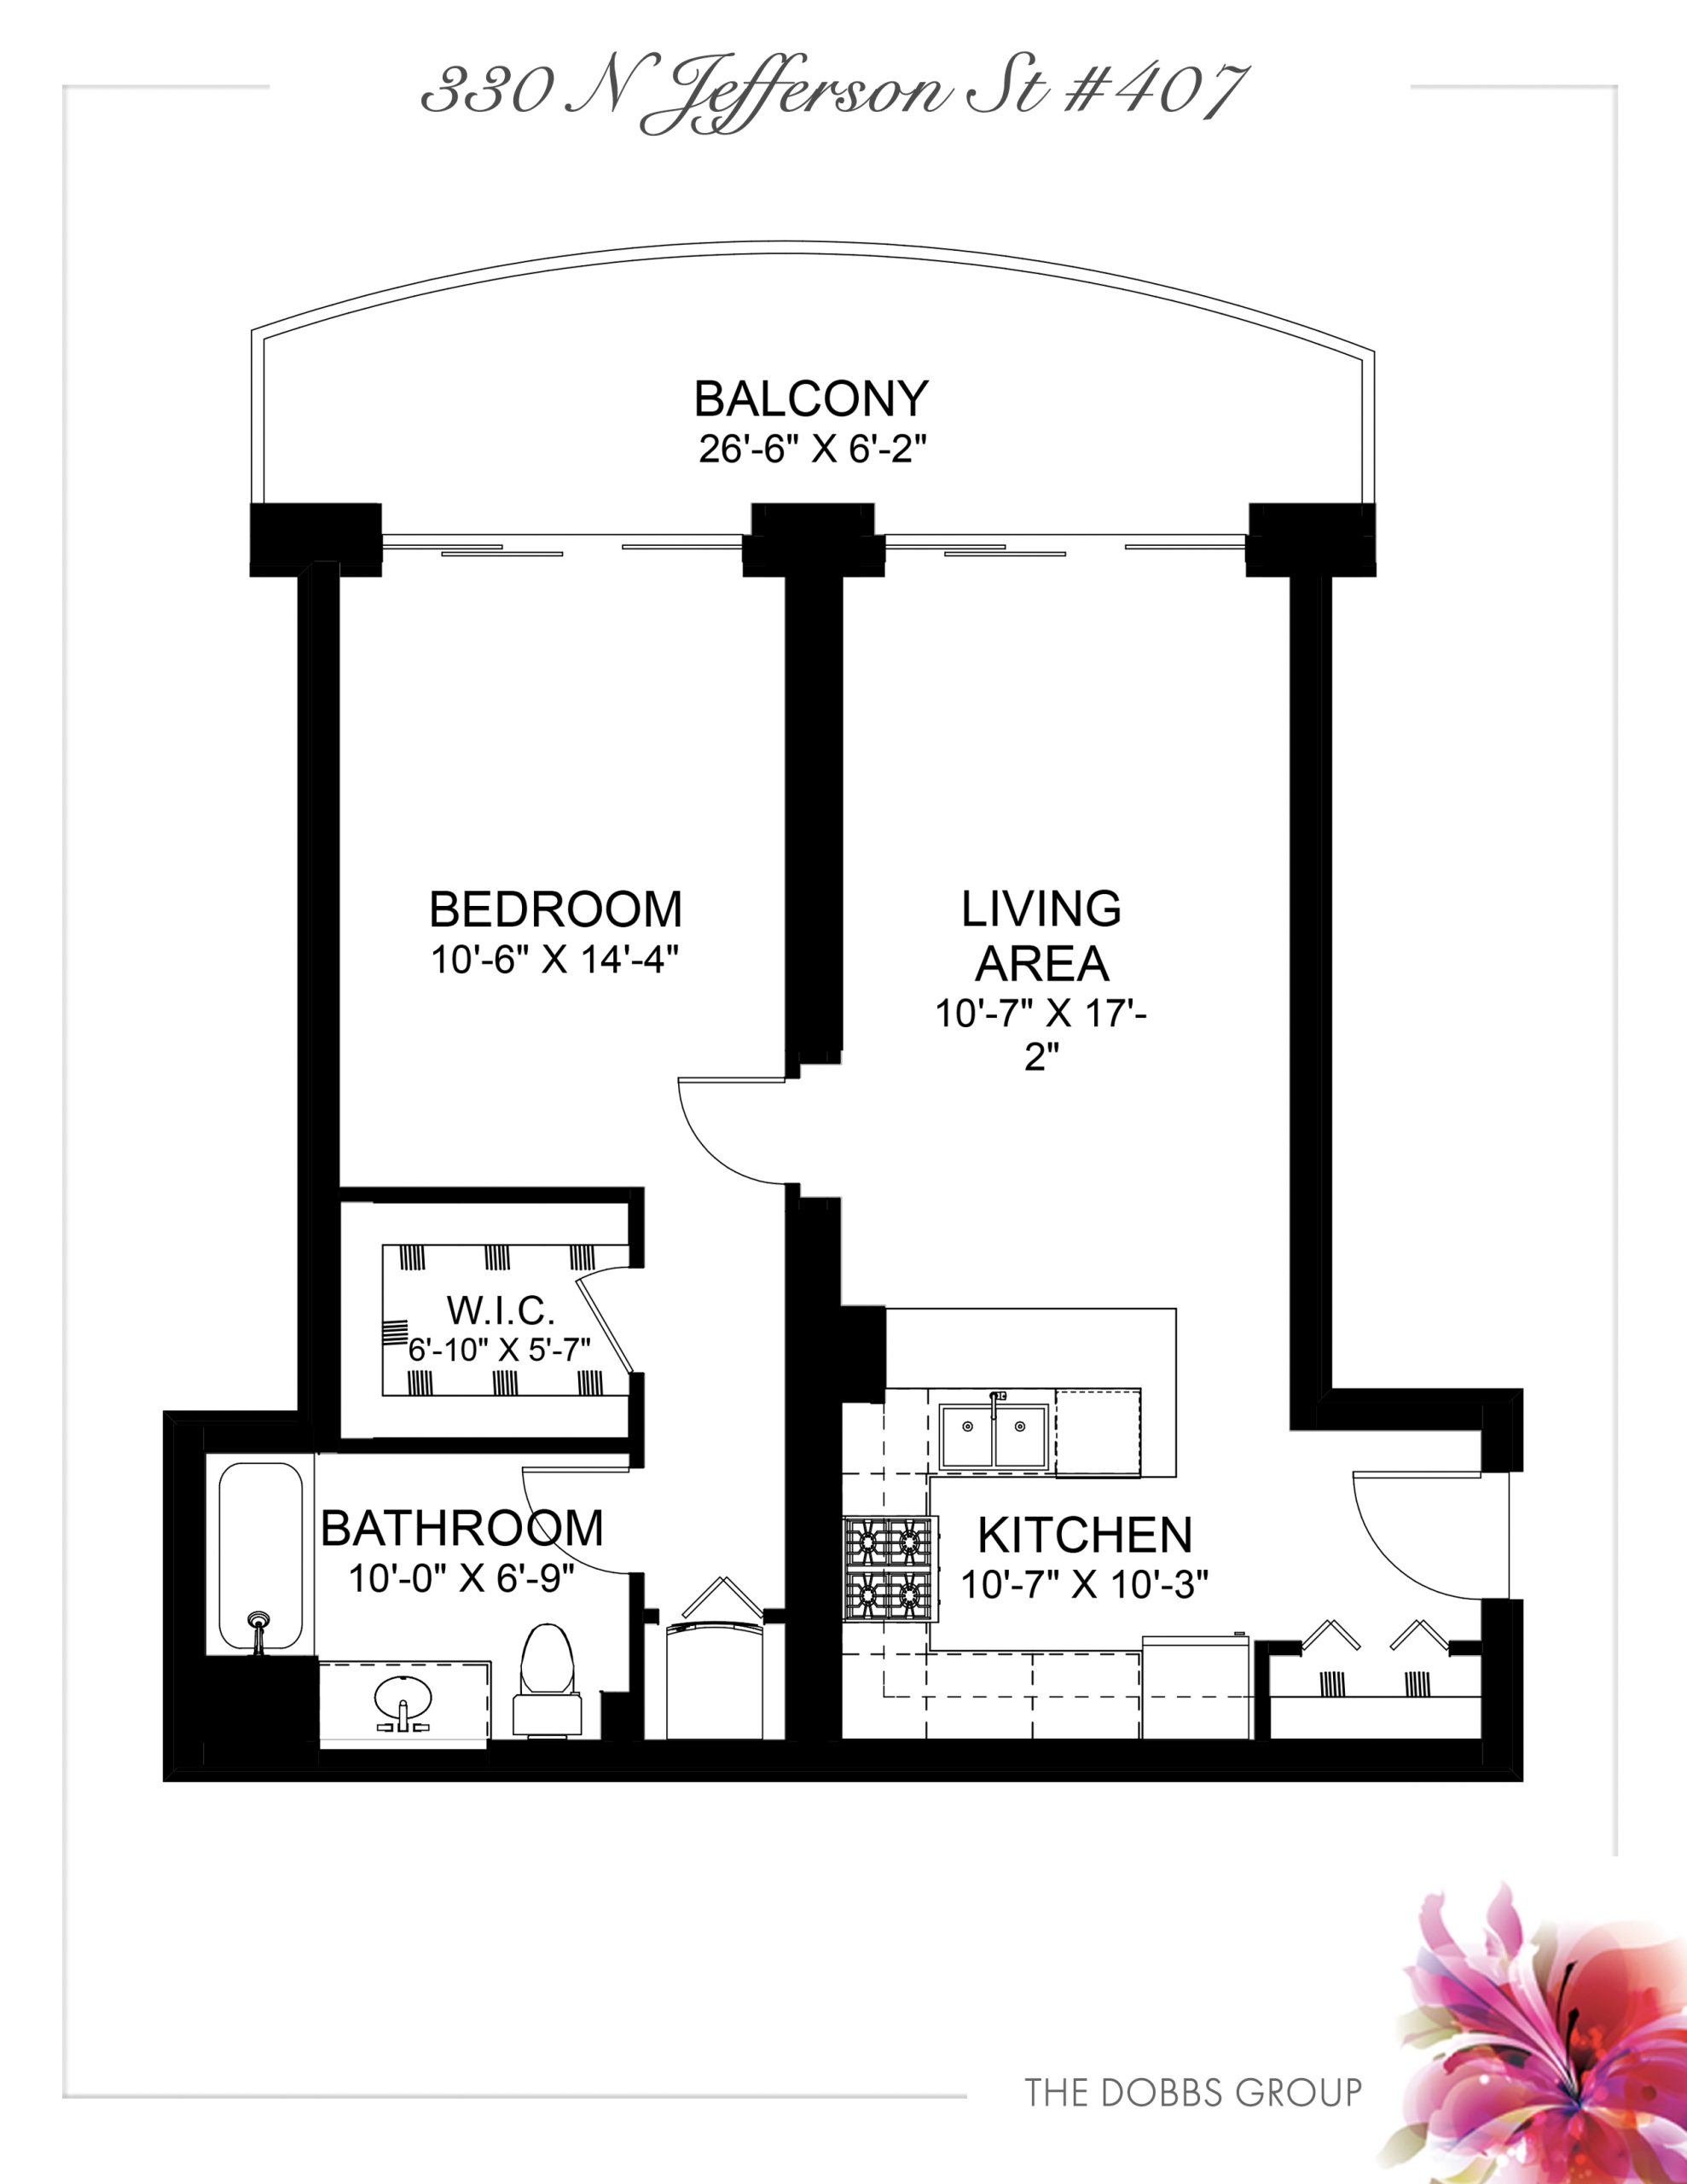 Floor Plan 330-Jefferson-407 Chicago